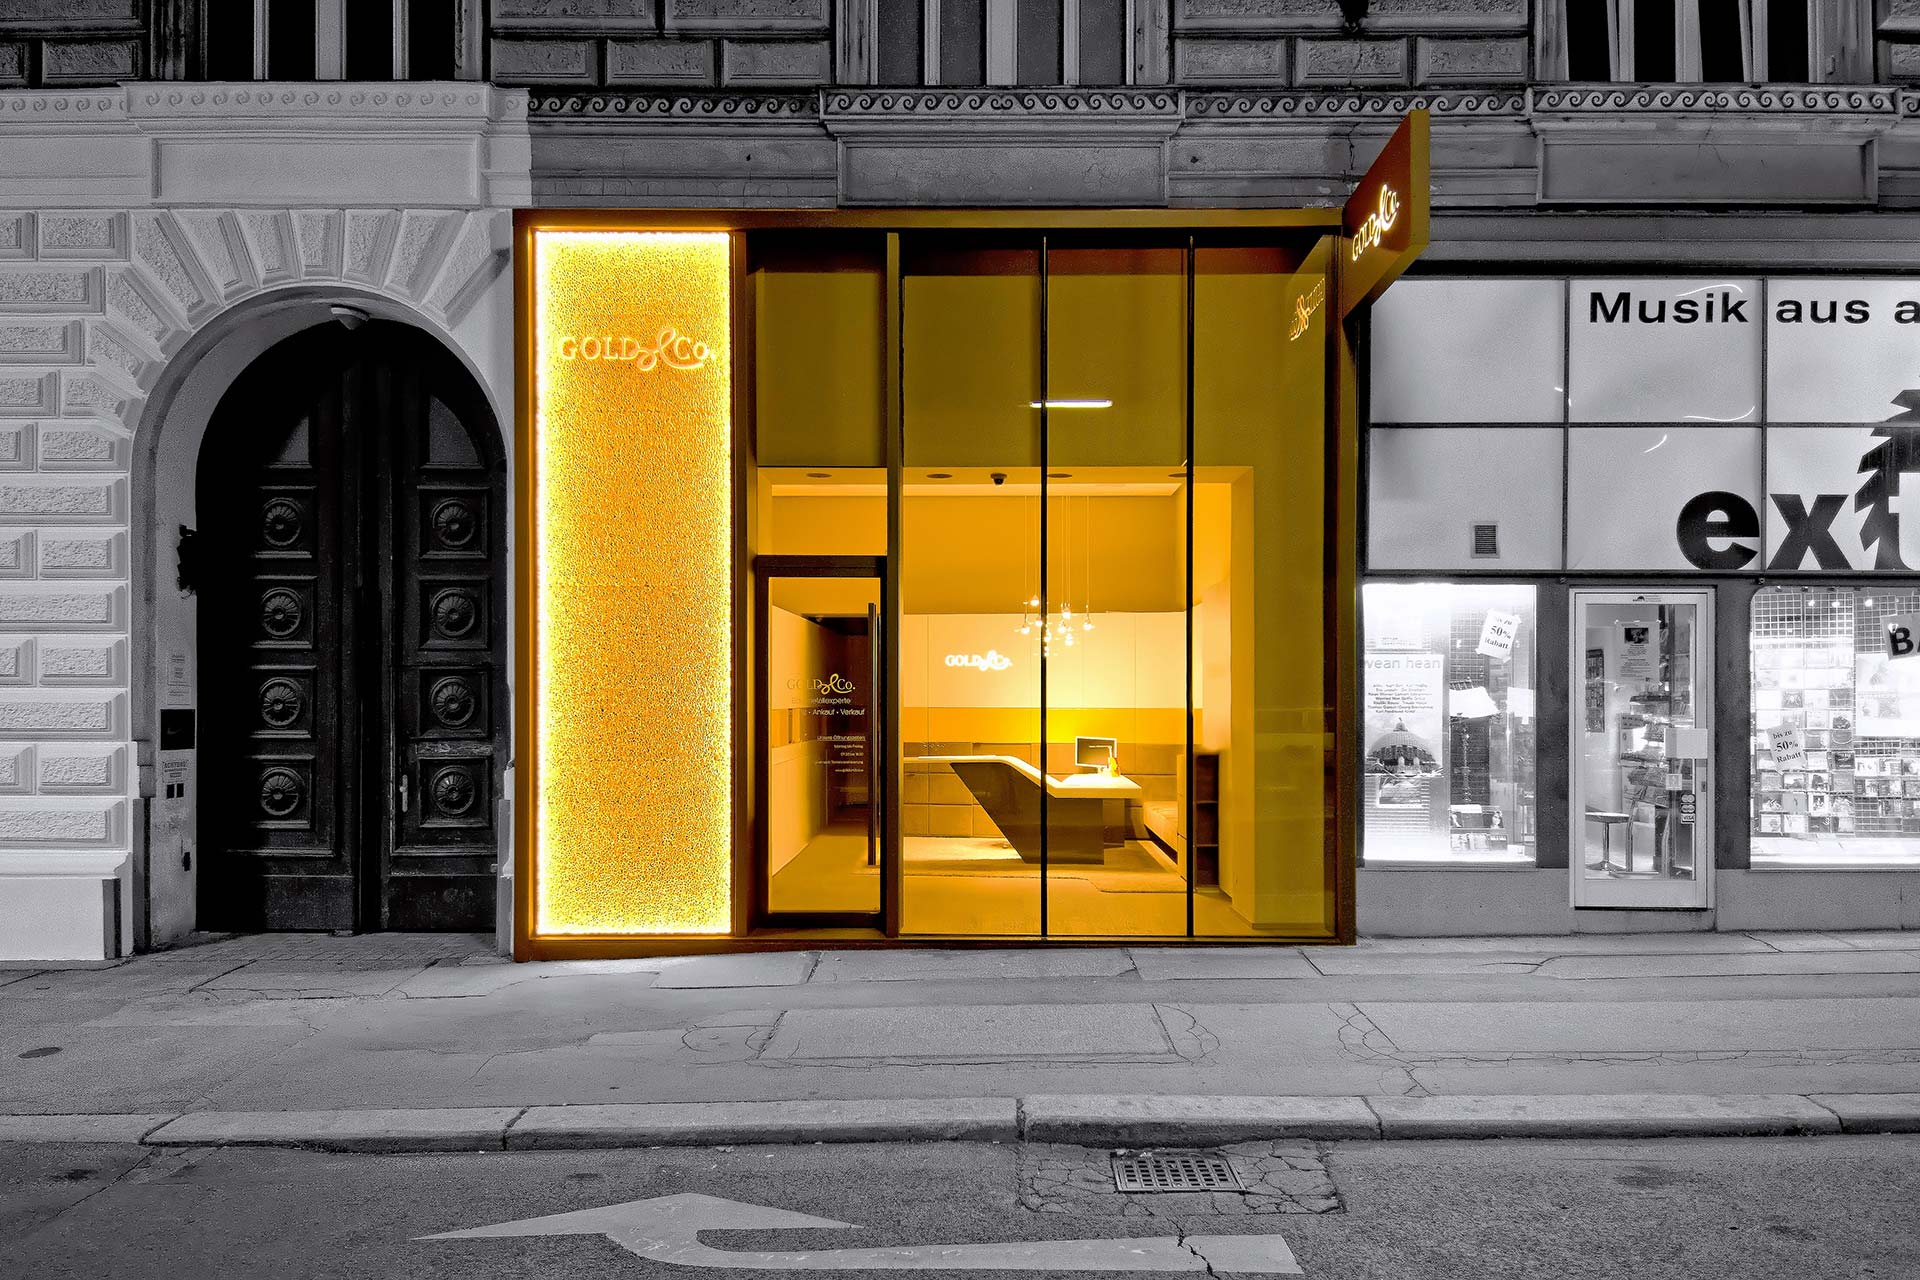 2013 - GOLD & CO. - Shopbeleuchtung, A-1090 Wien